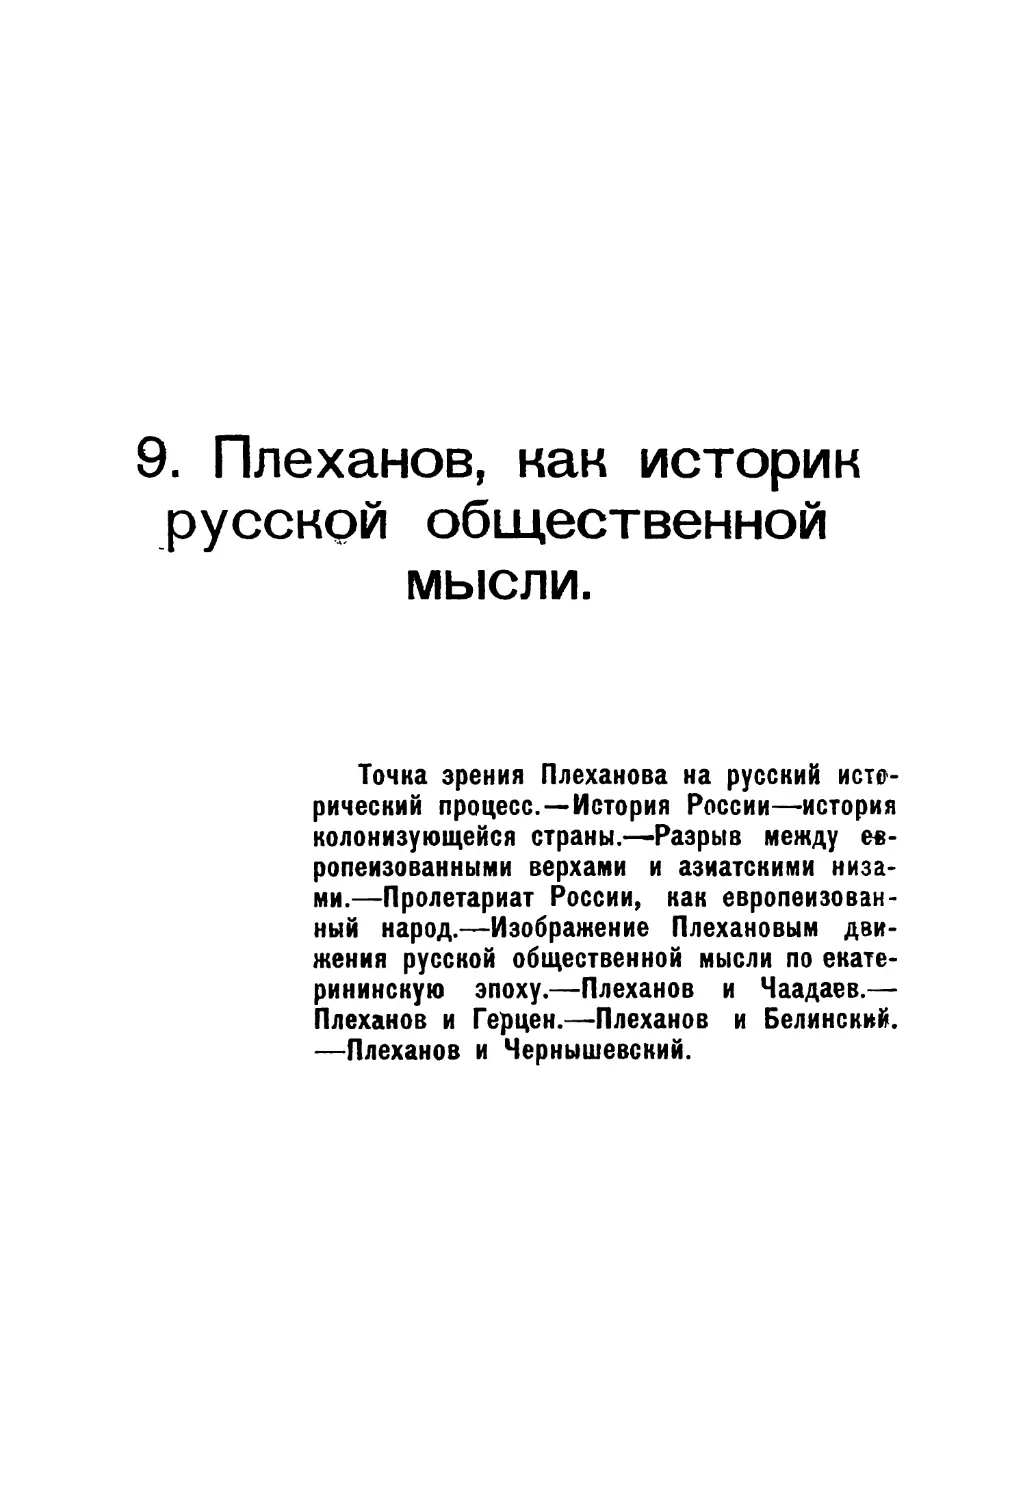 9. Плеханов, как историк русской общественной мысли